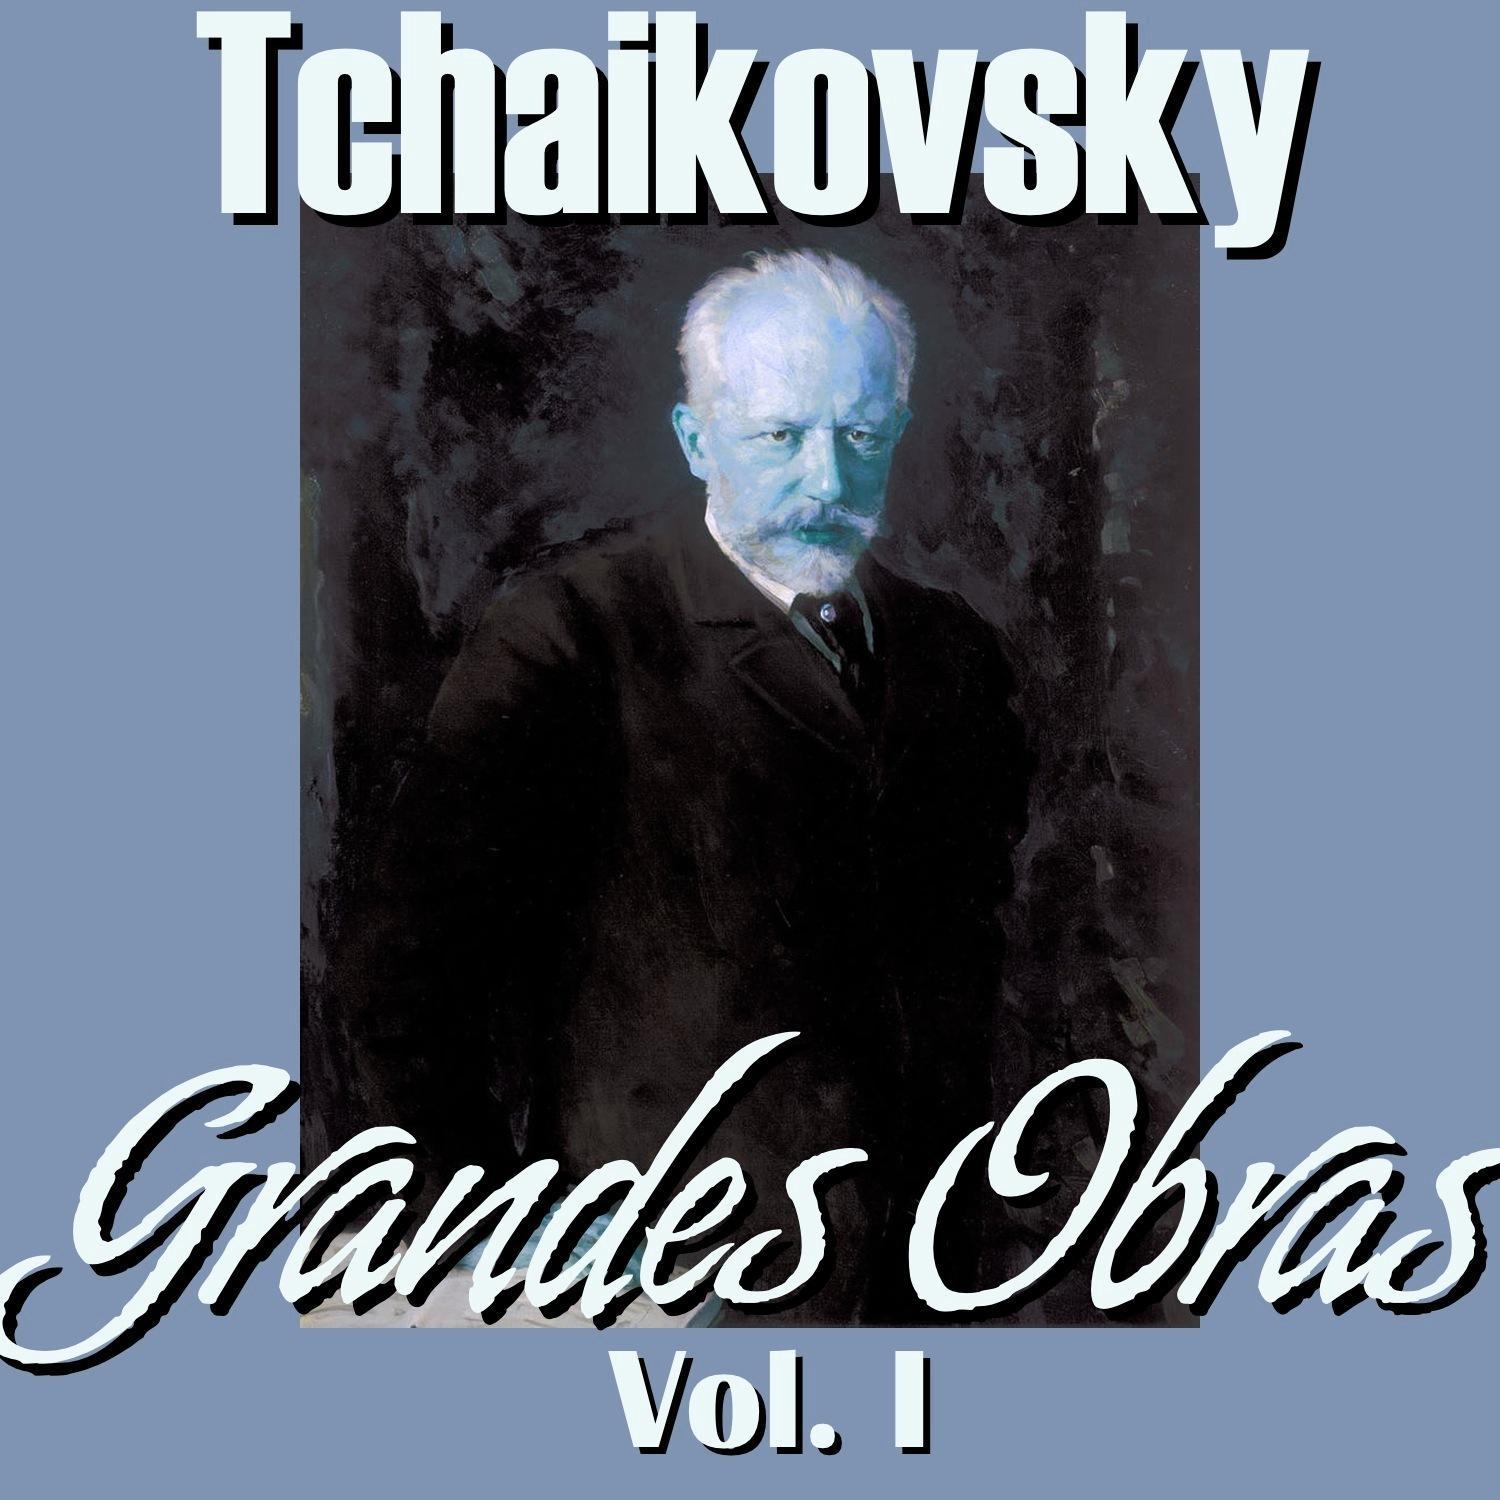 Tchaikovsky Grandes Obras Vol.I